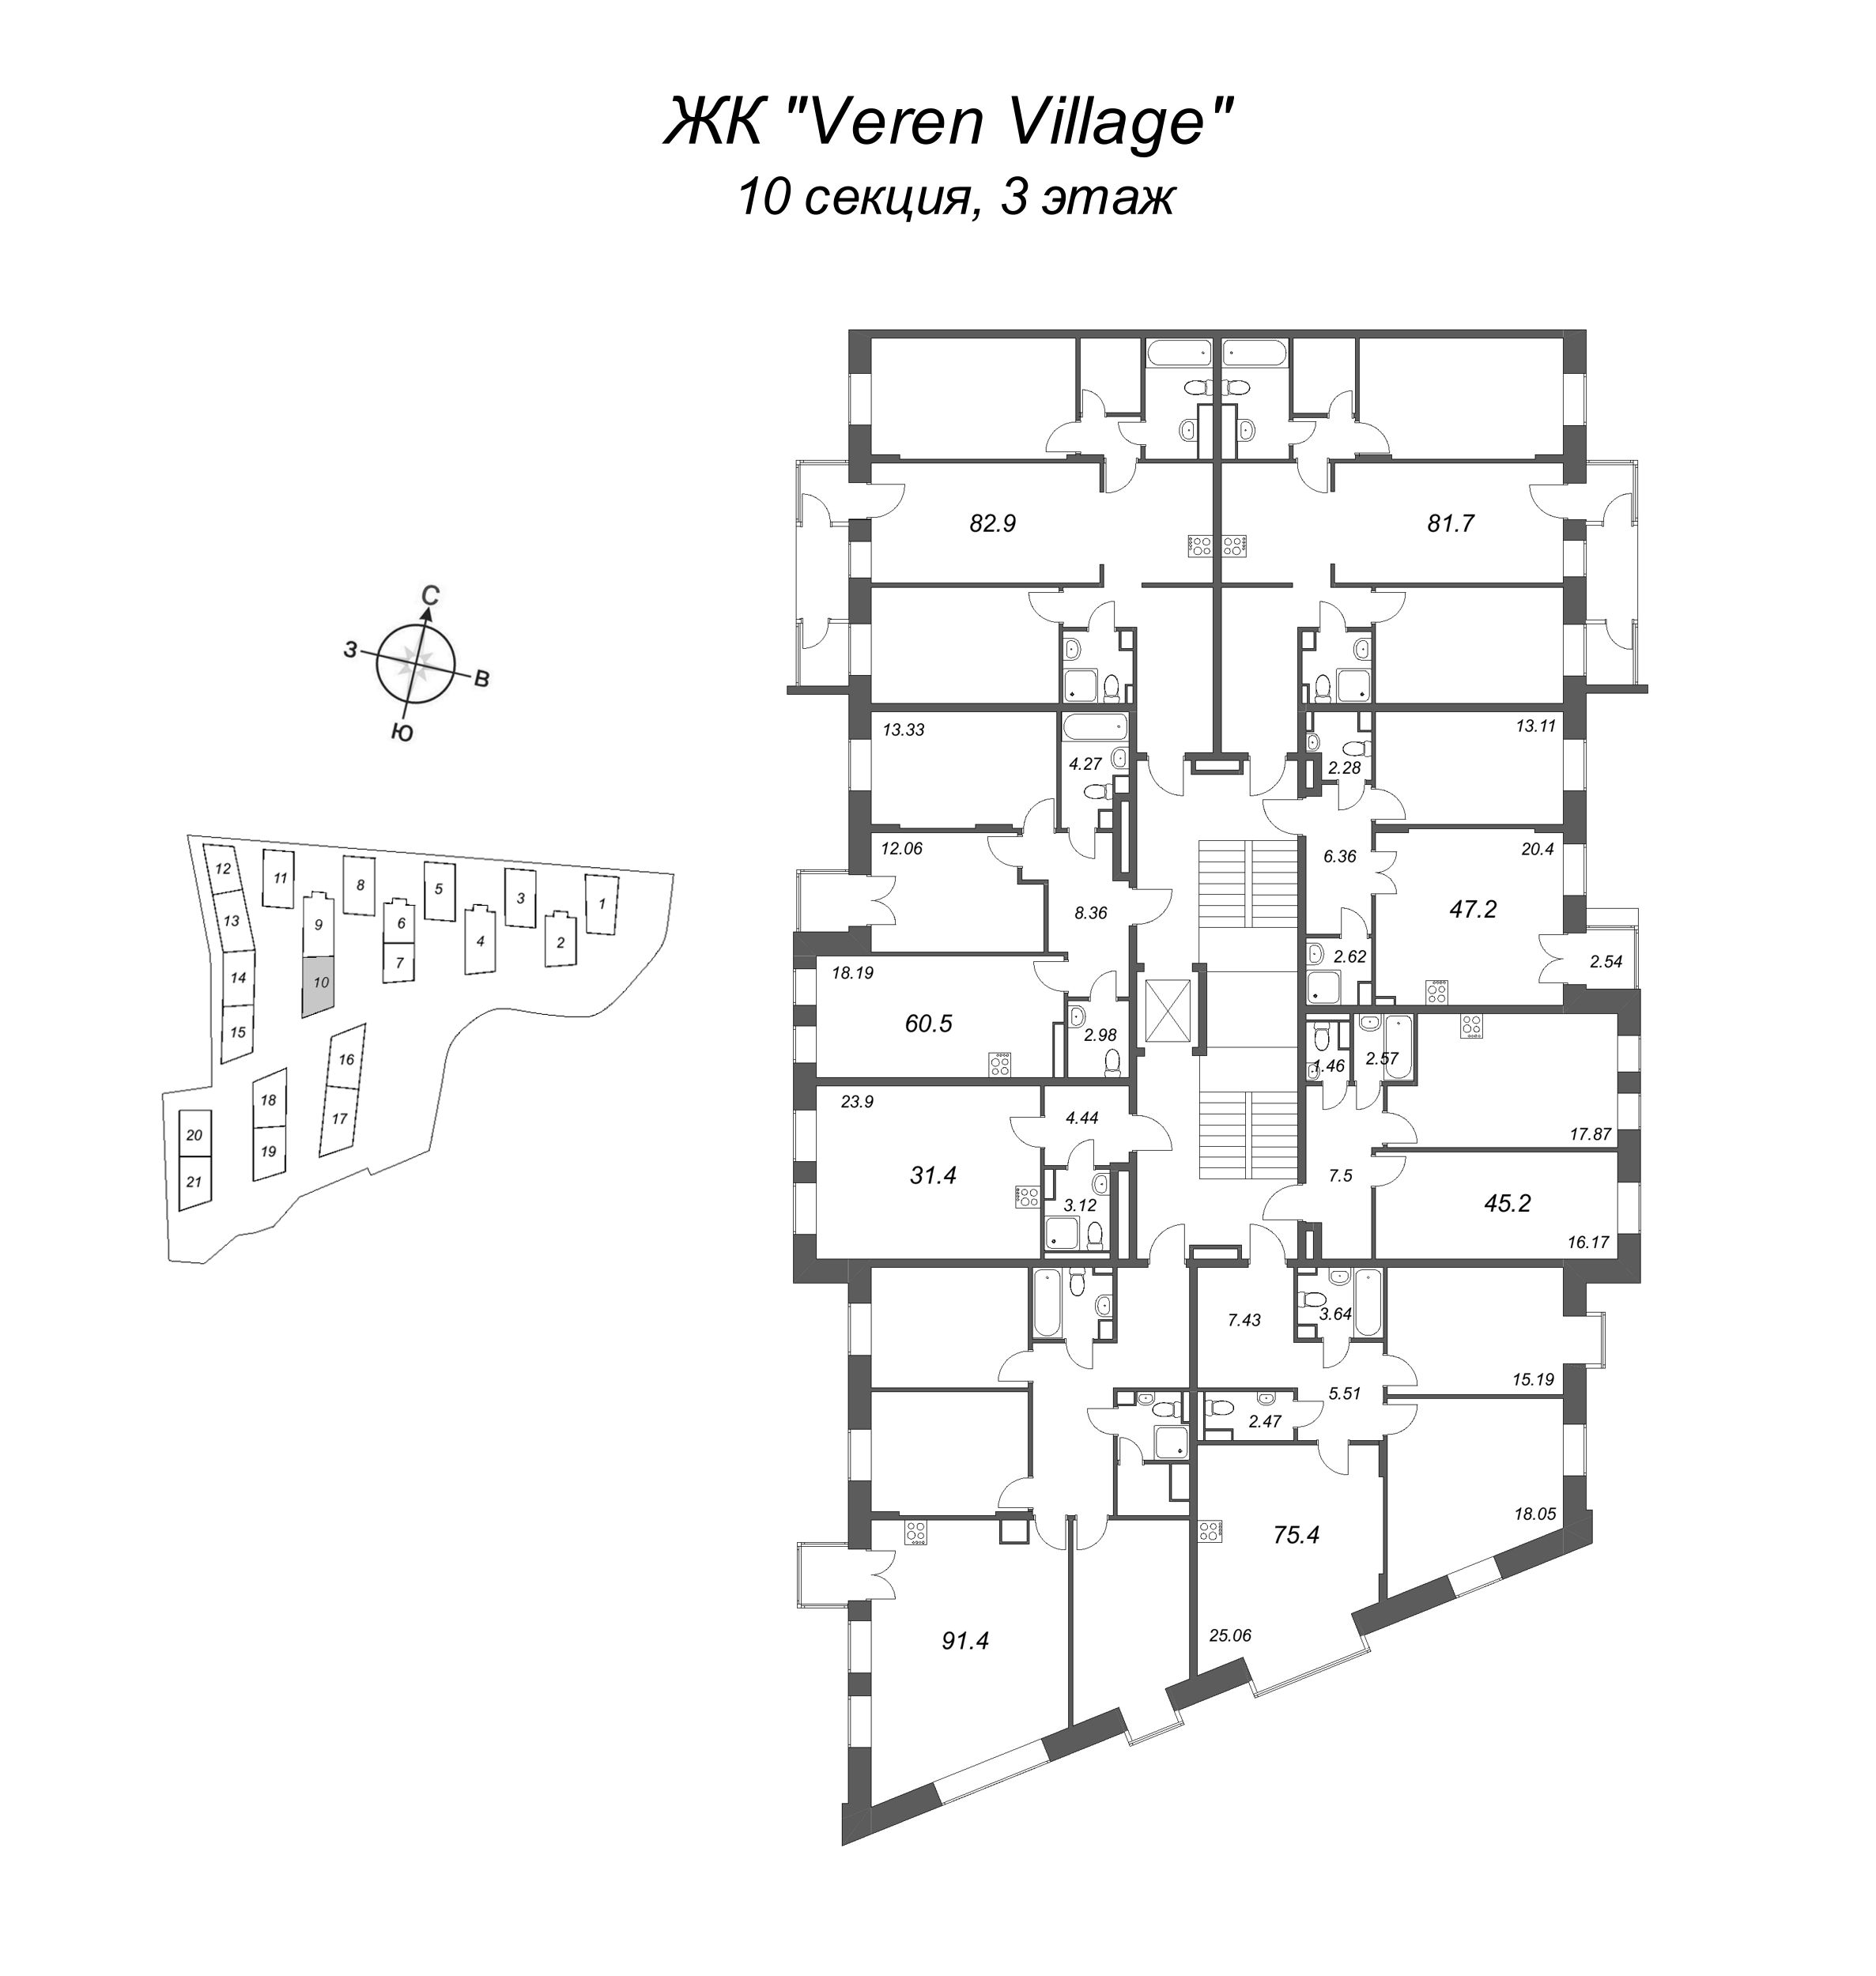 3-комнатная (Евро) квартира, 81.7 м² в ЖК "VEREN VILLAGE стрельна" - планировка этажа